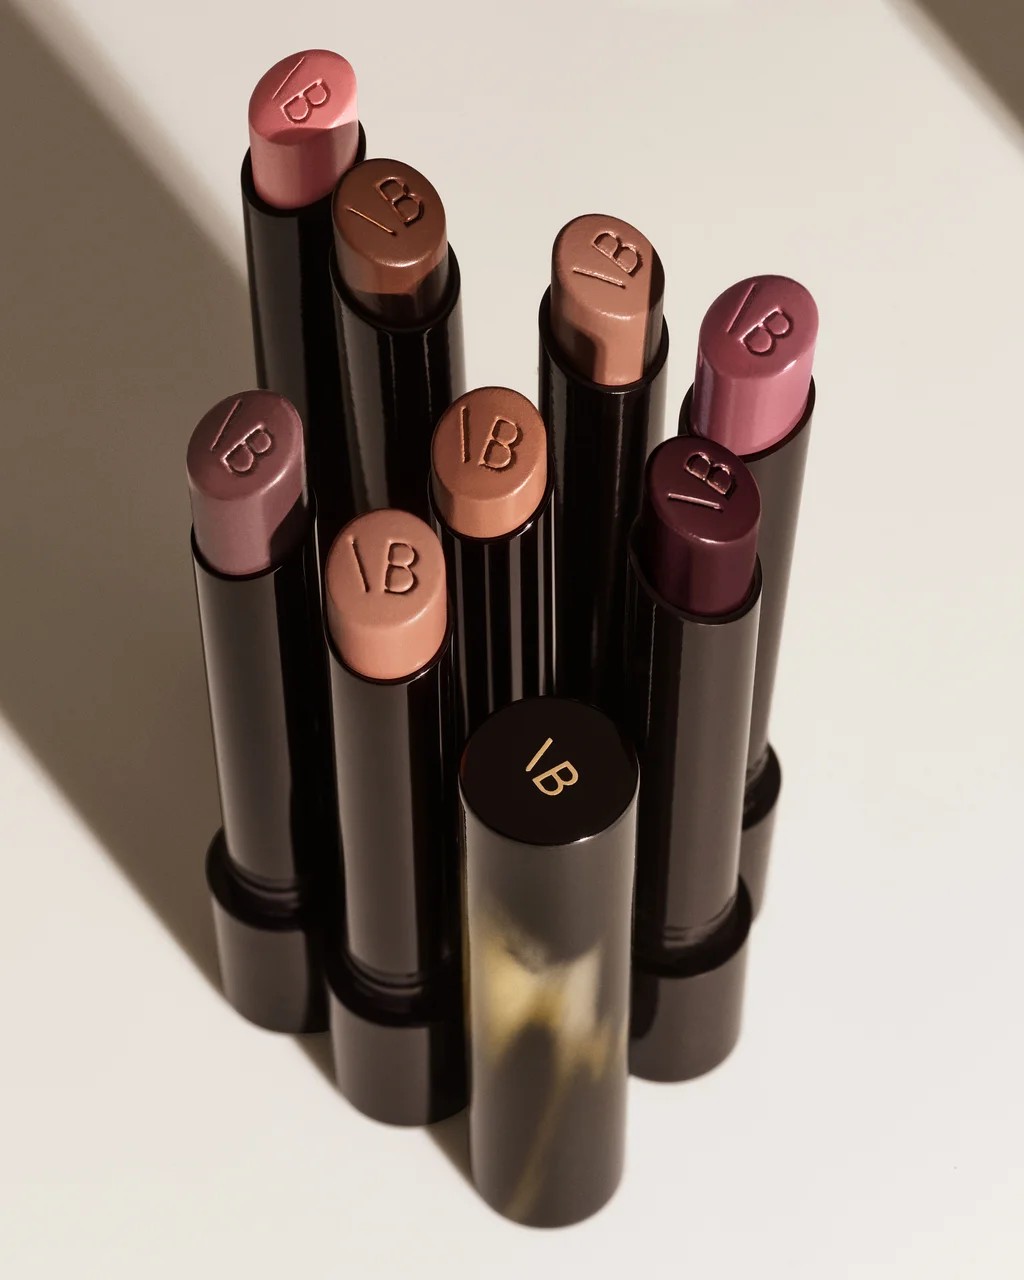 Os nove pigmentos da coleção são envoltos em tubos elegantes com padrão de chifre (Foto: Reprodução/Victoria Beckham Beauty)